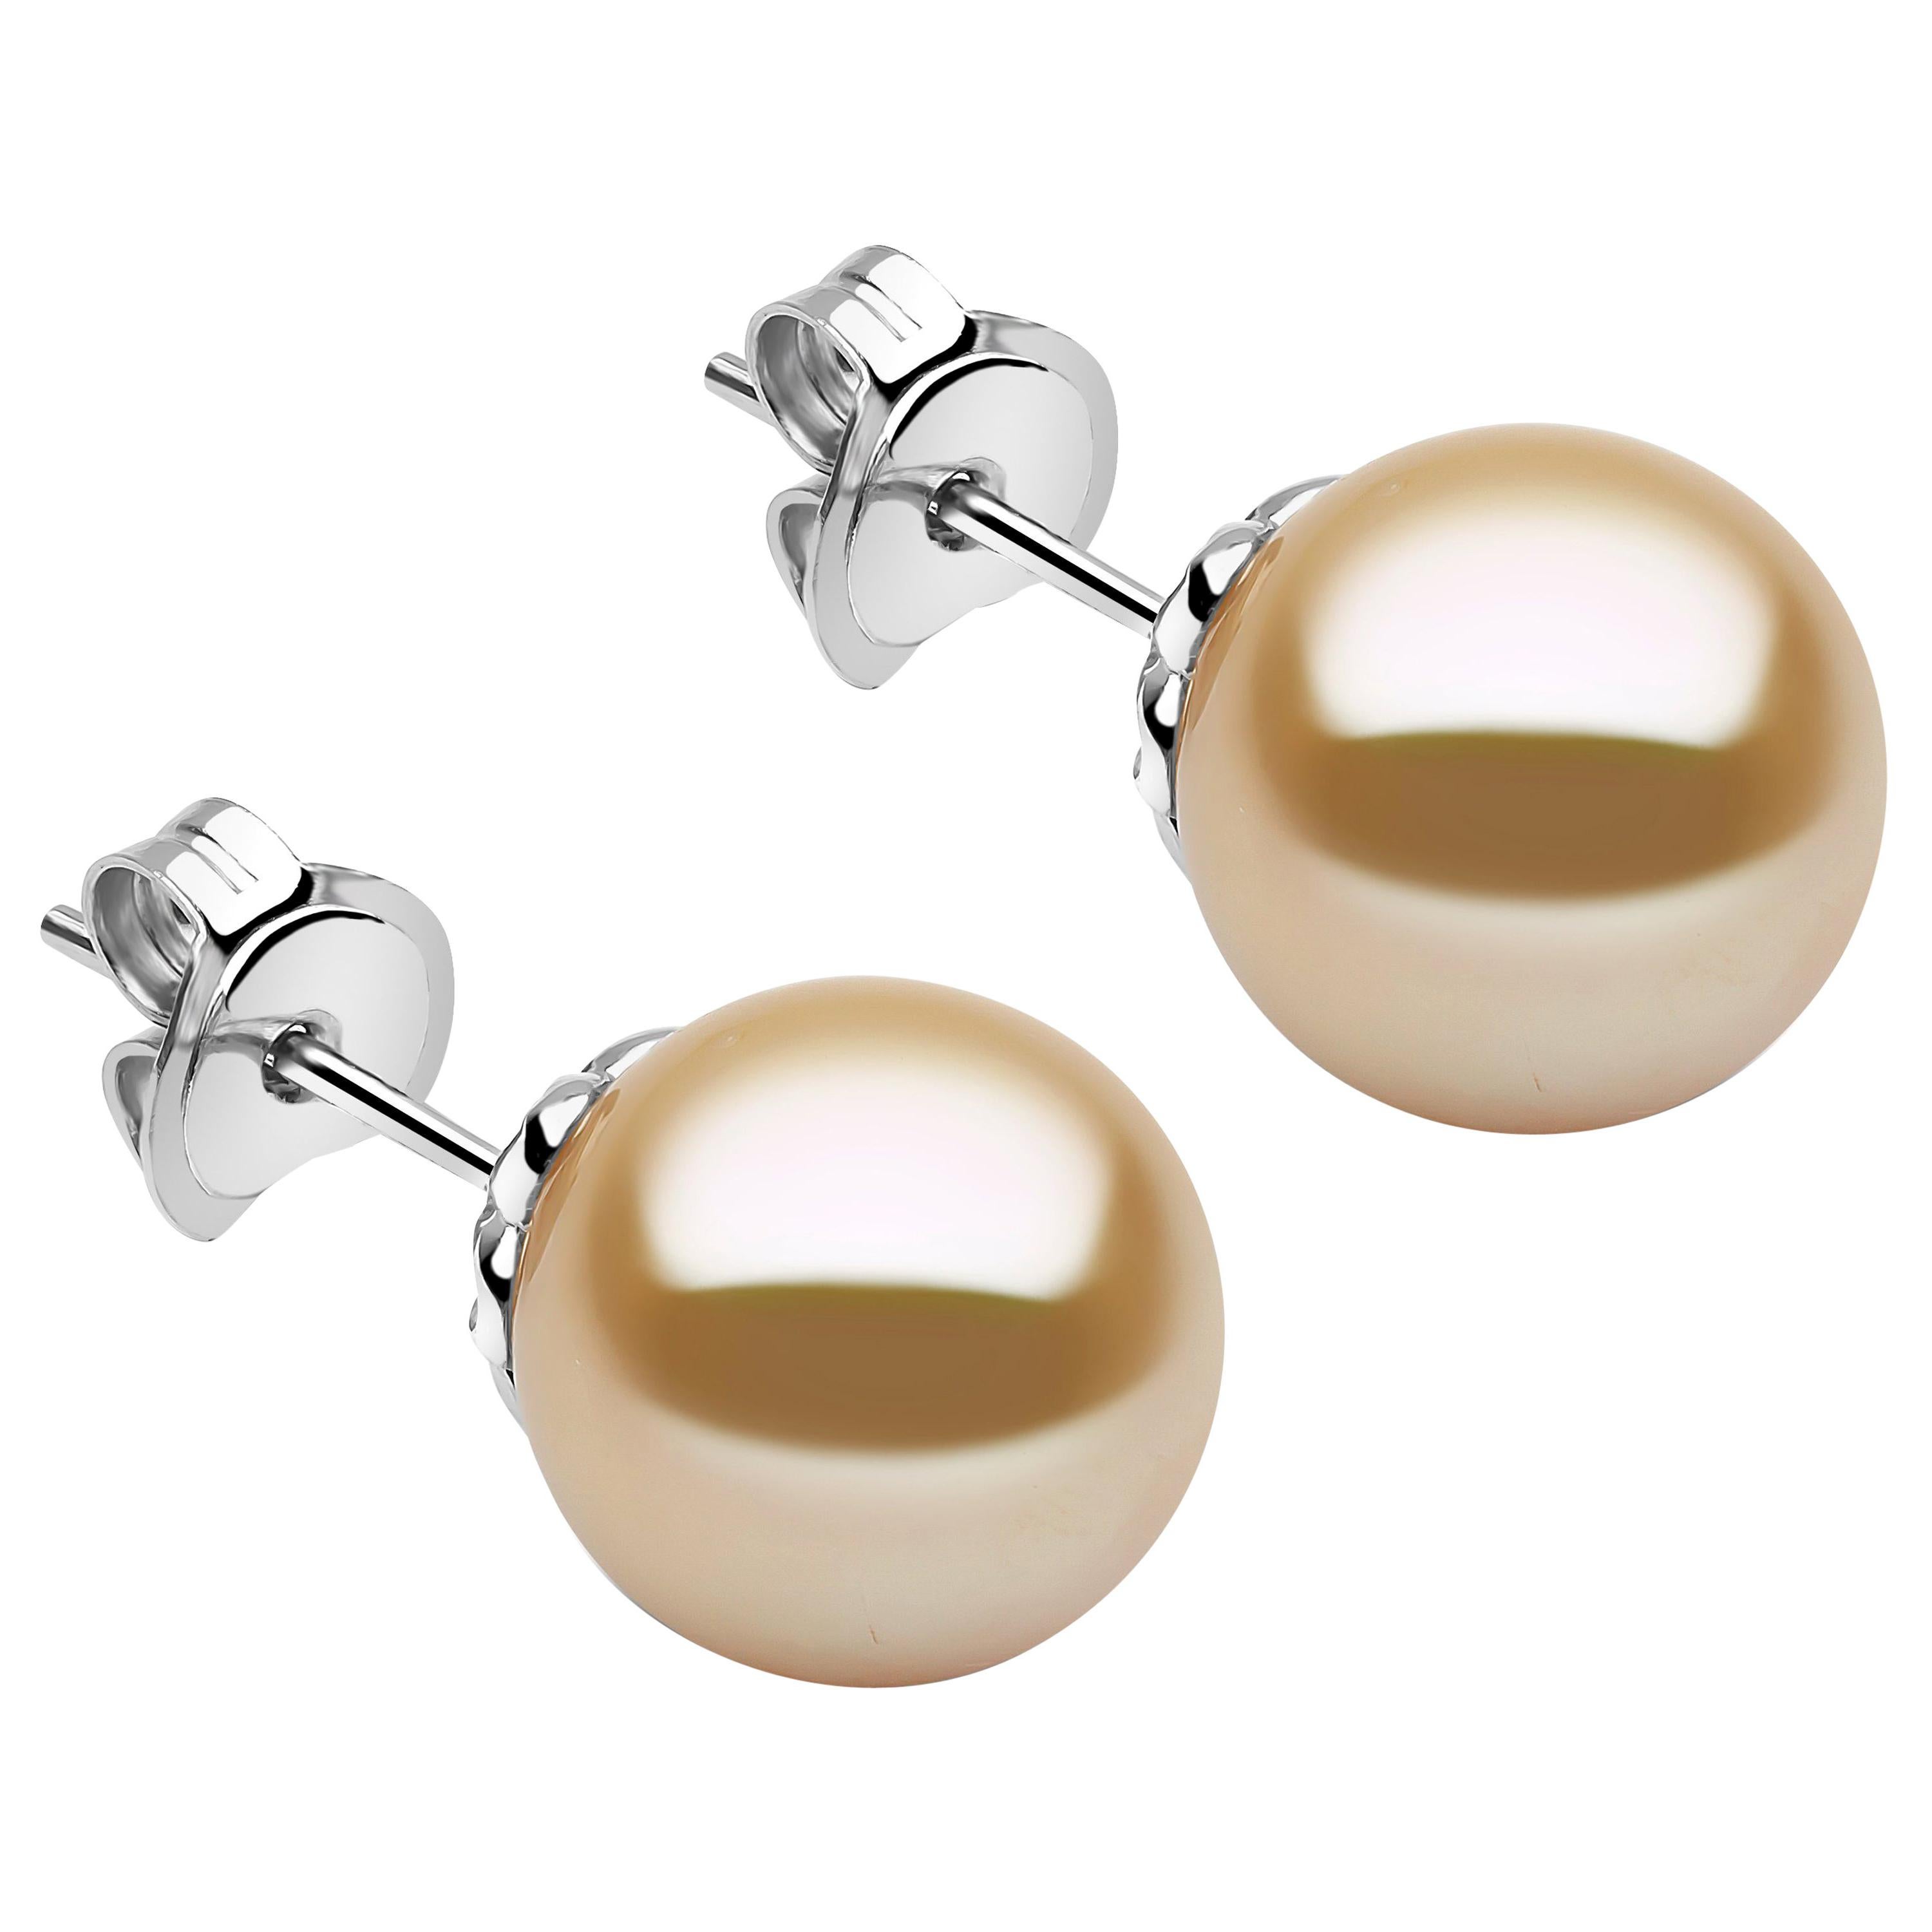 Yoko London Golden South Sea Pearl Stud Earrings Set in 18 Karat White Gold